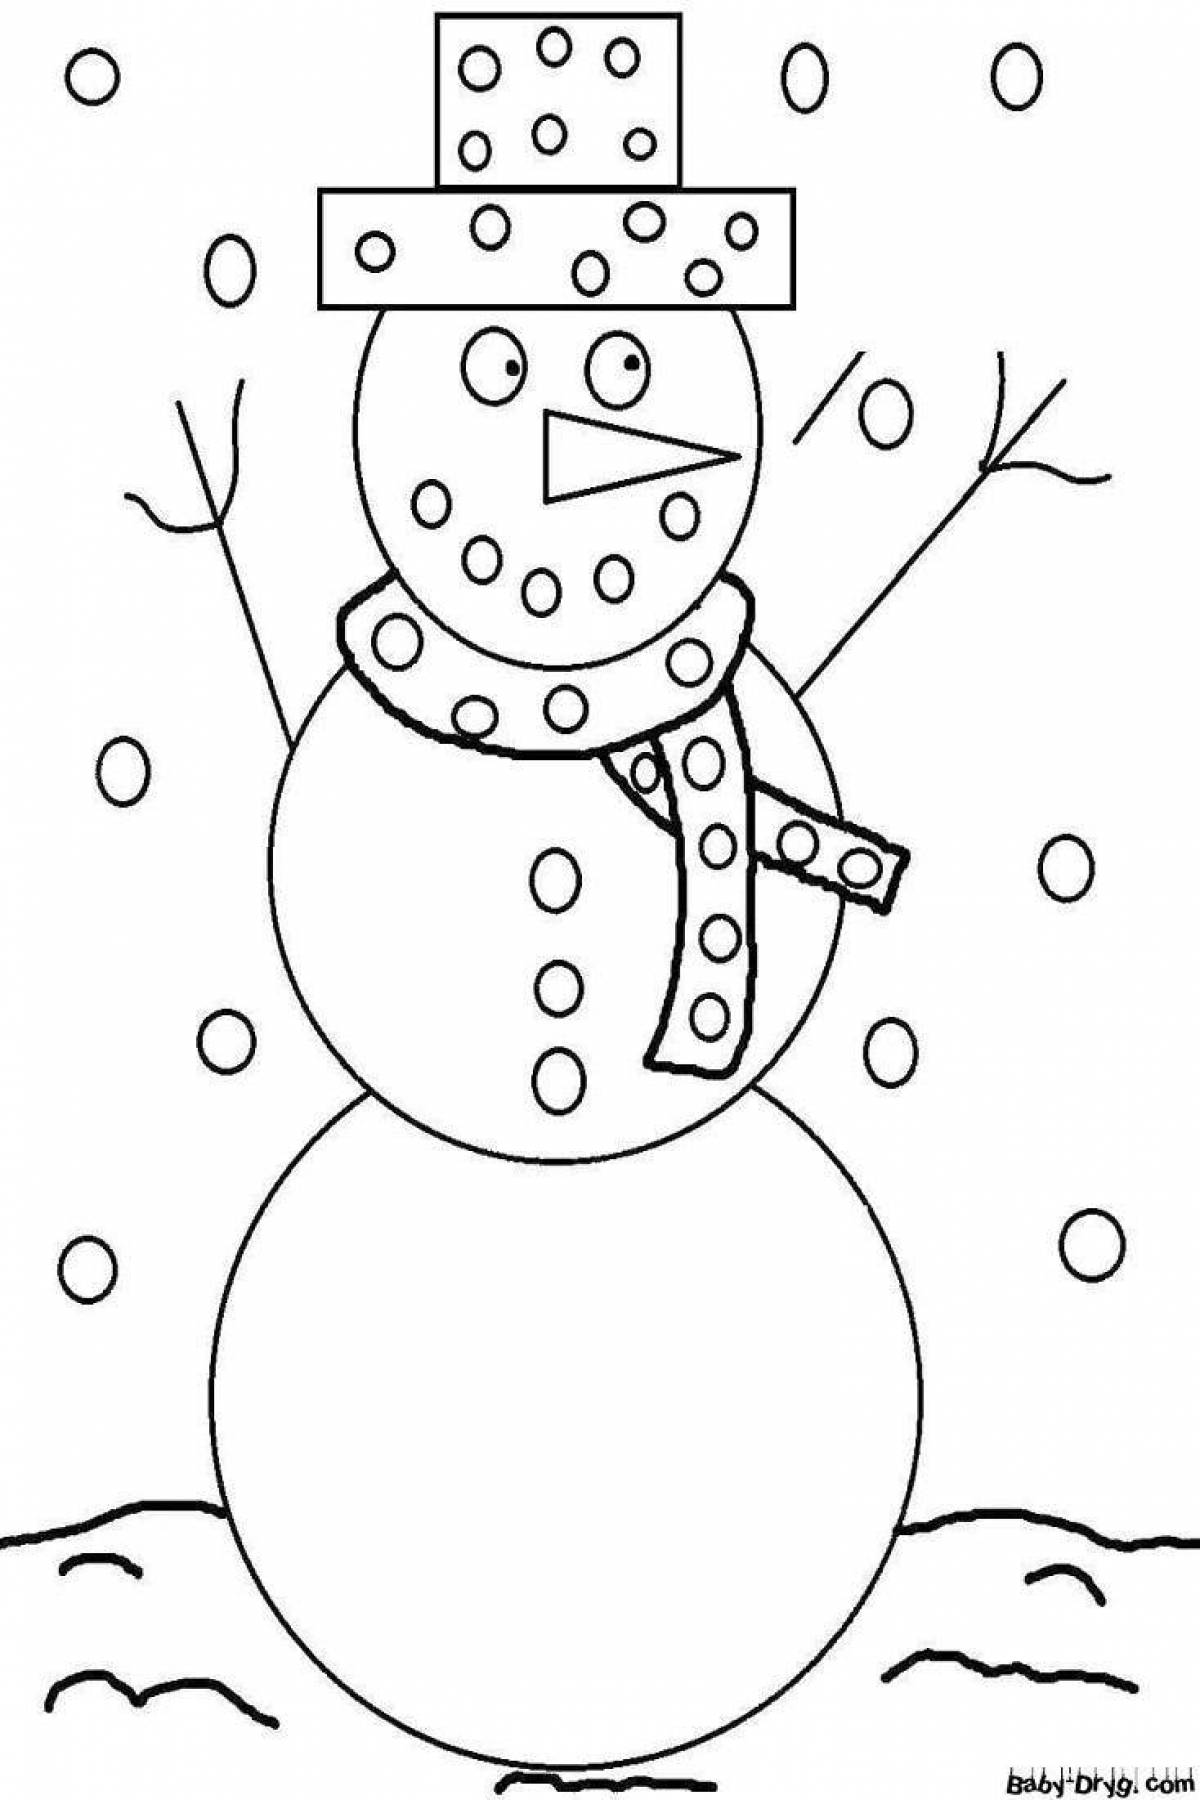 Яркая раскраска снеговик для детей 6-7 лет